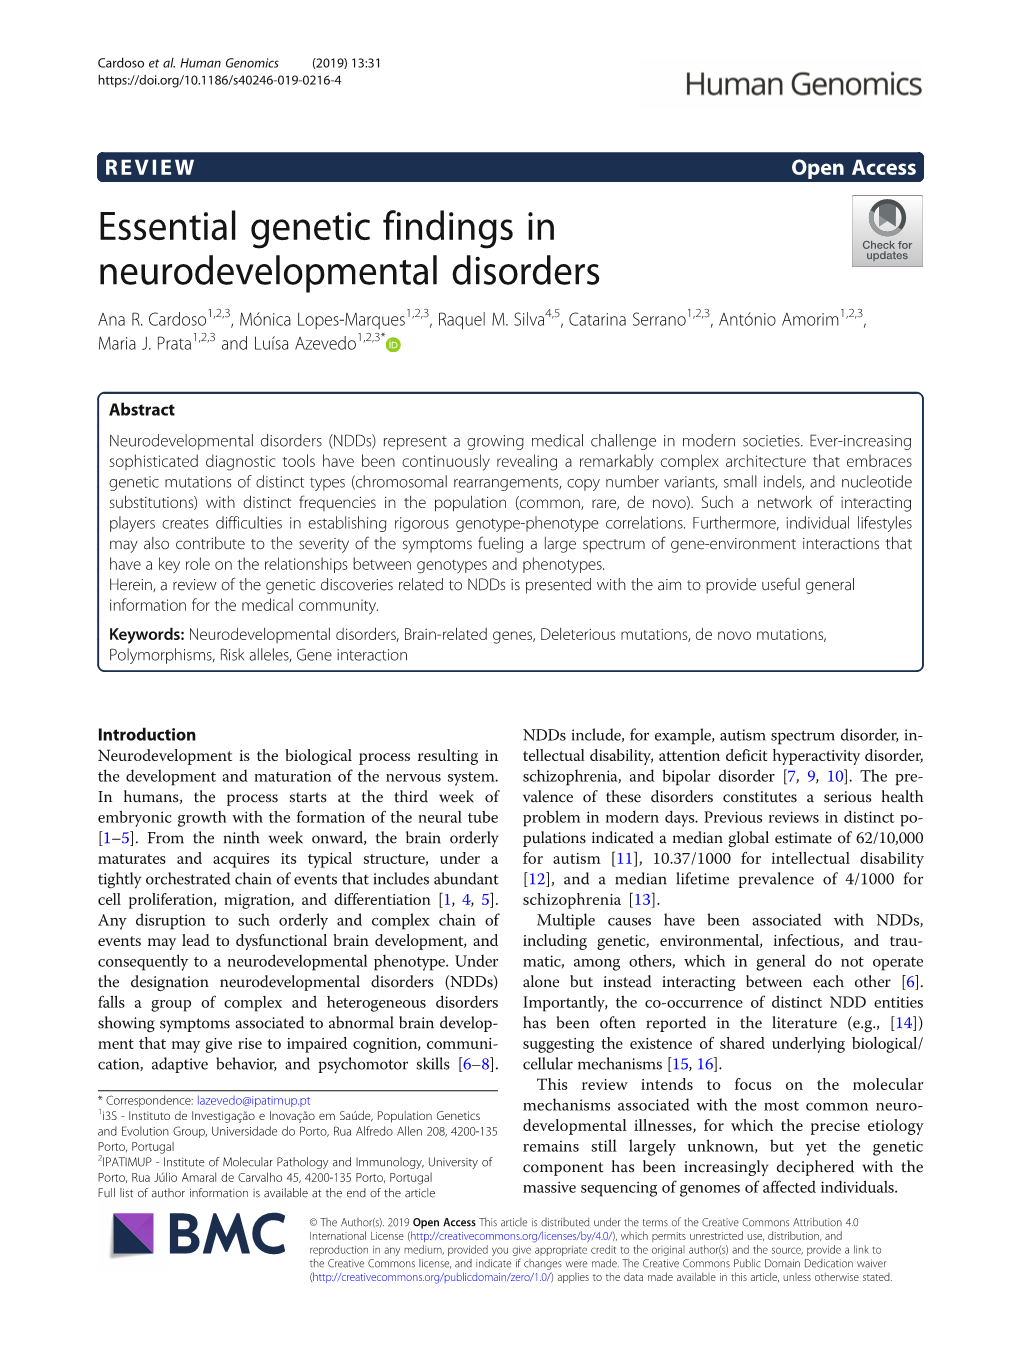 Essential Genetic Findings in Neurodevelopmental Disorders Ana R